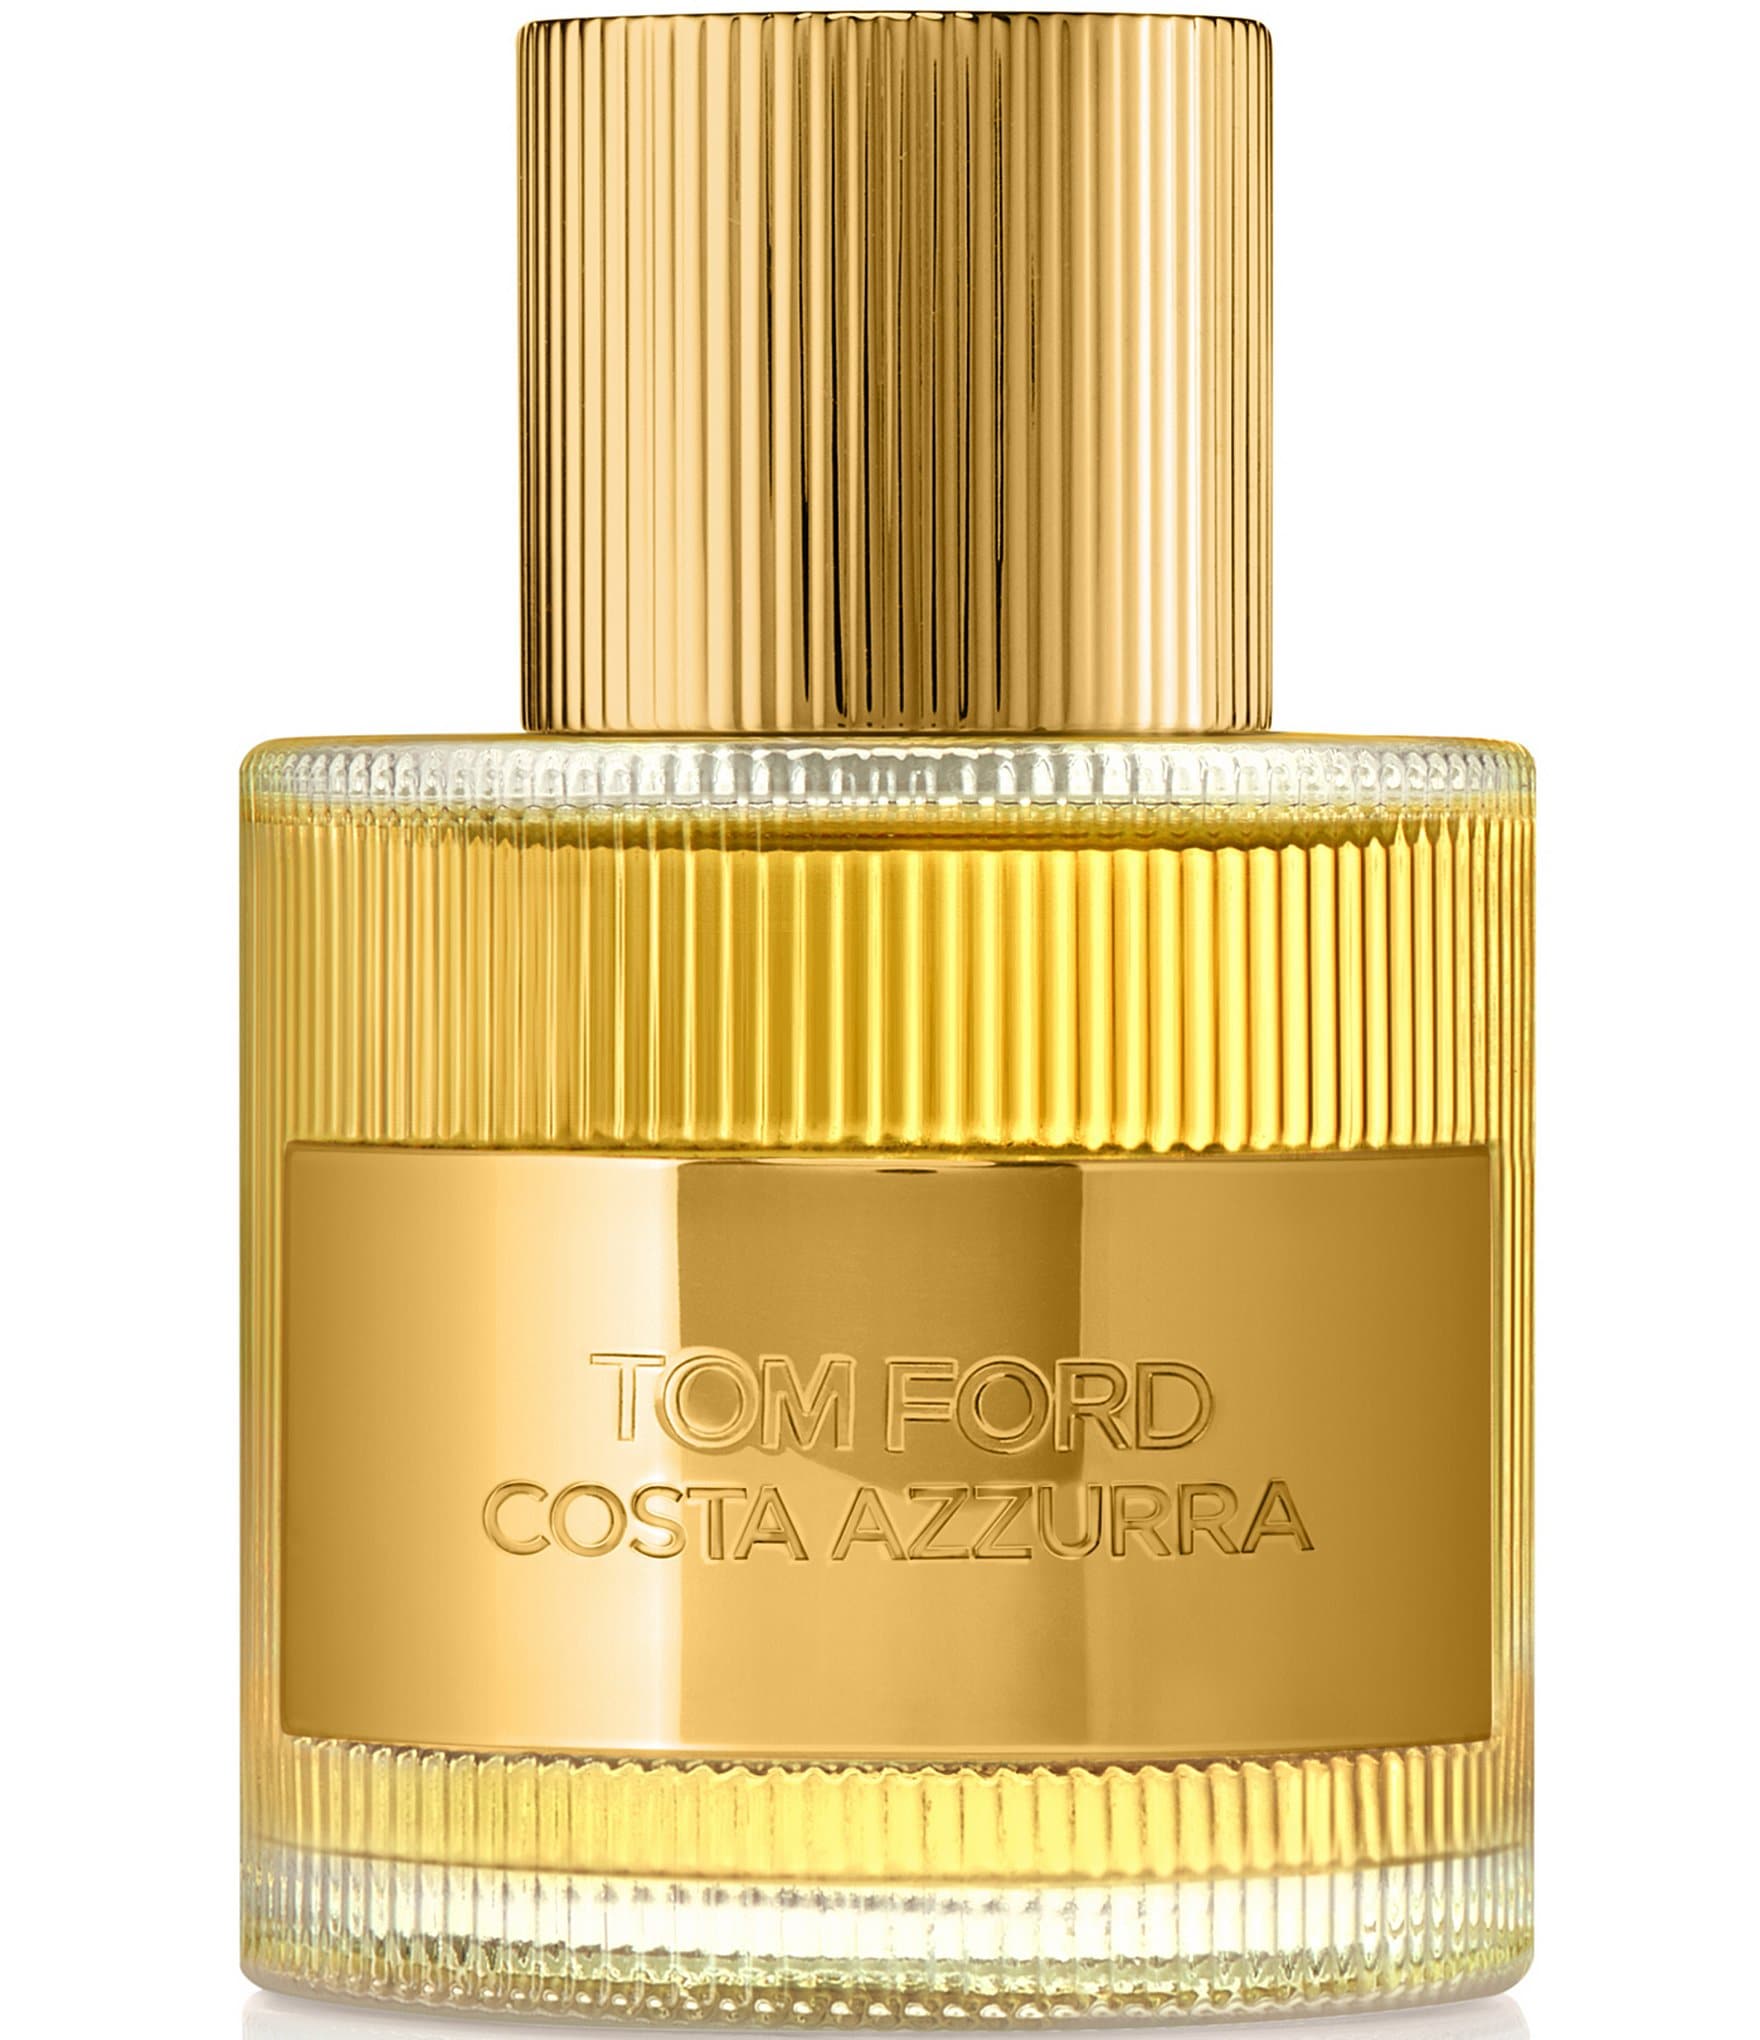 TOM FORD COSTA AZZURRA Eau de Parfum Spray | Dillard's